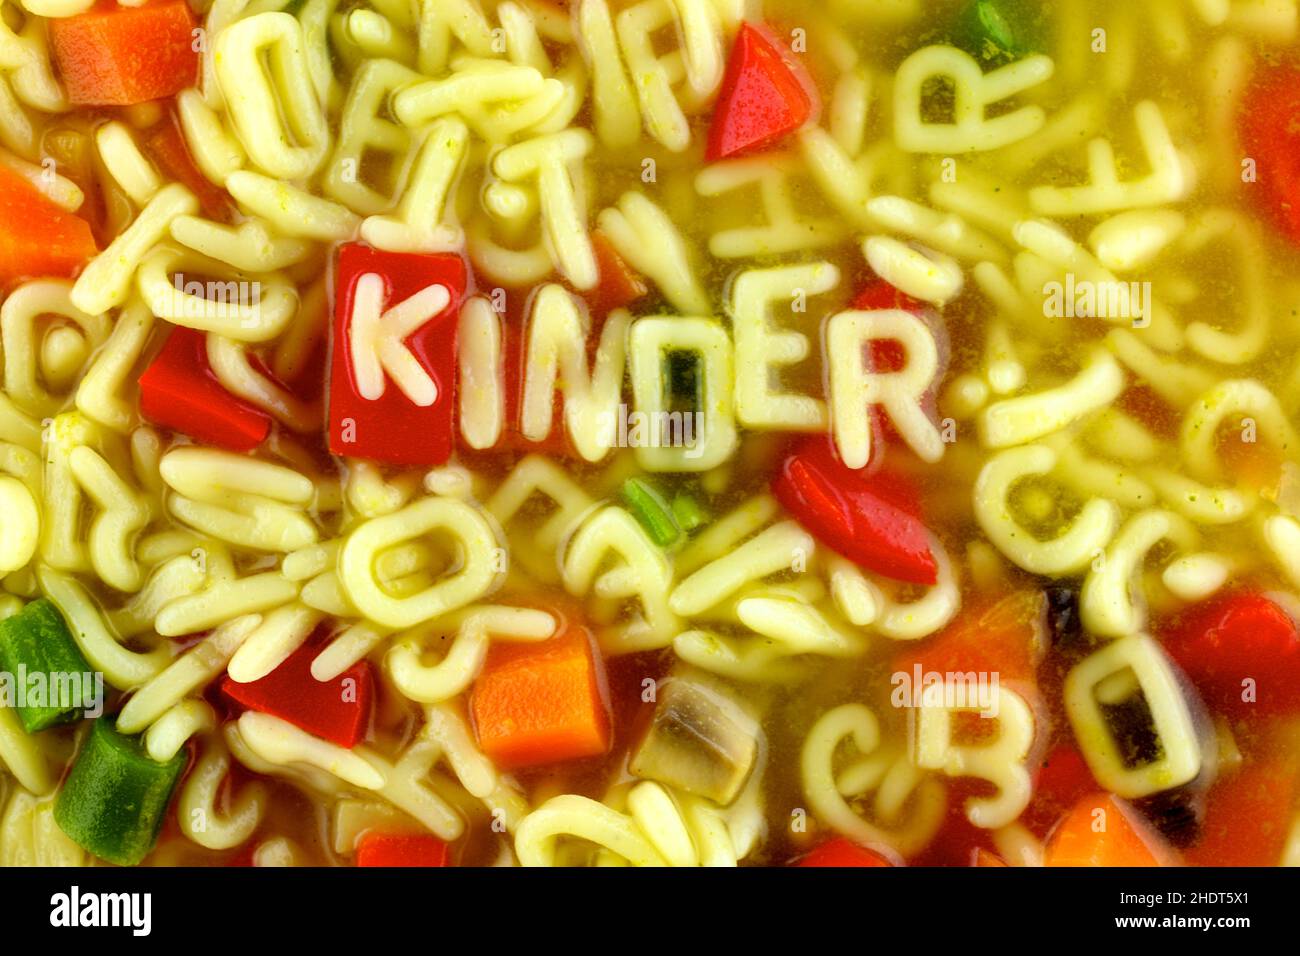 minestra alfabetica, minestra di spaghetti, menù per bambini, minestre alfabetiche, minestre di spaghetti, menu per bambini Foto Stock